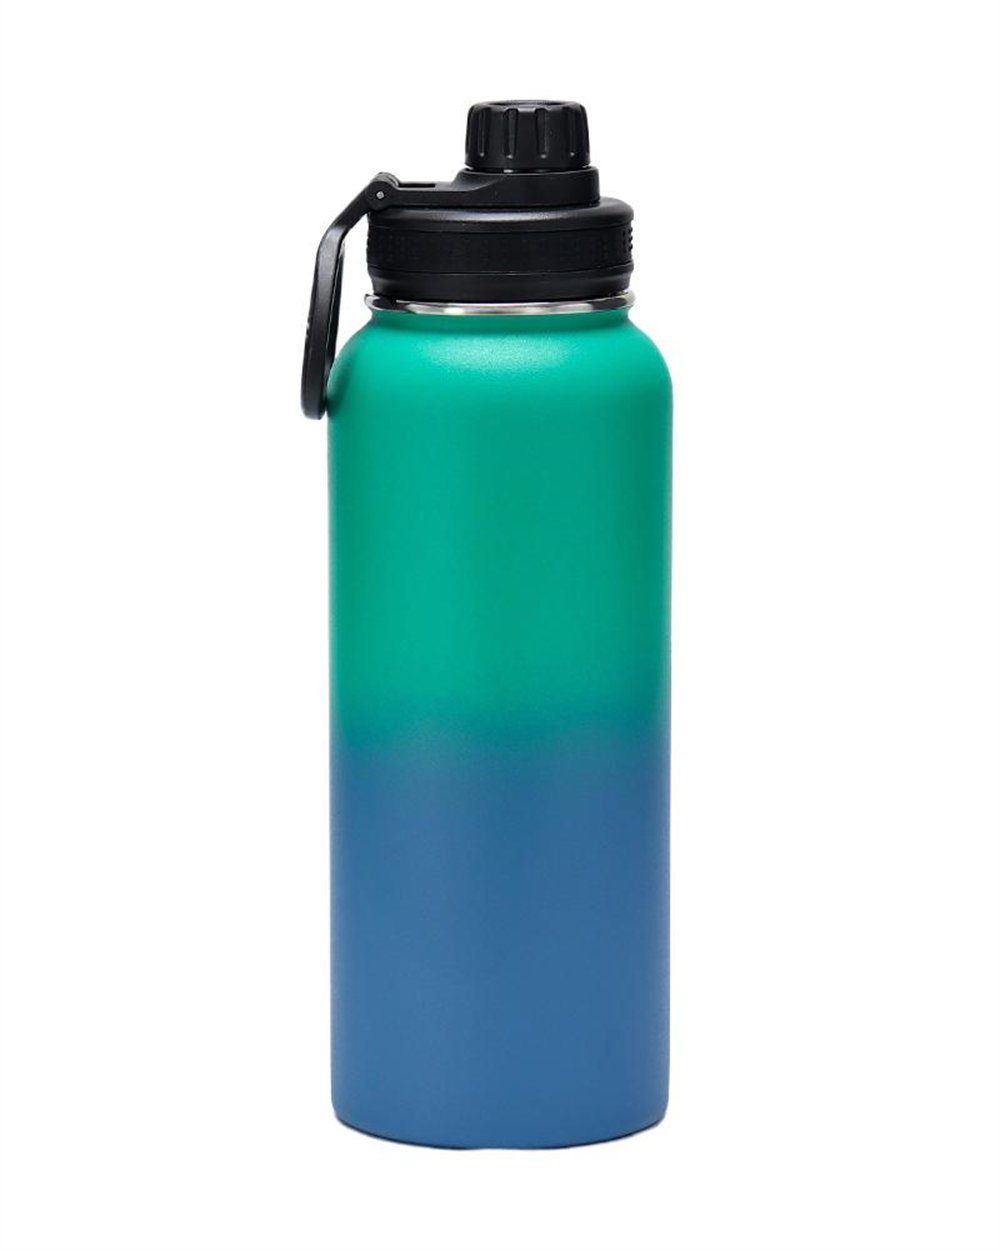 Rouemi Isolierflasche Große Kapazität Thermobecher,1000ml Trinkflasche, 12h heiß/24h kalt, Heiß- und Kaltgetränke Isolierung Blau-grün